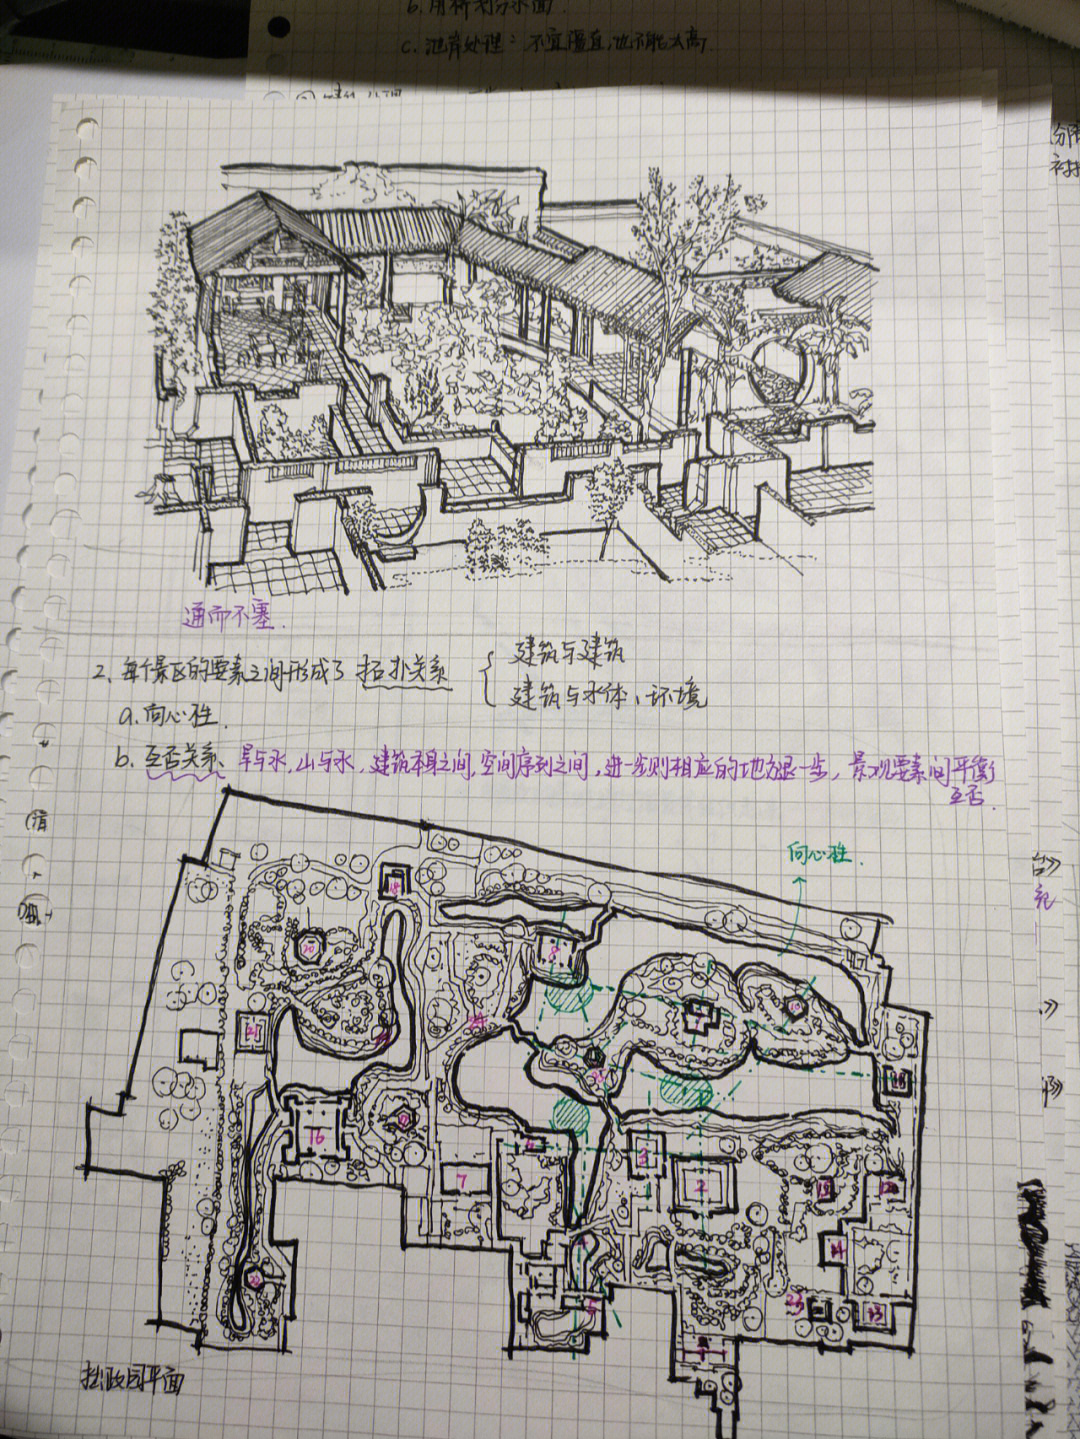 中国建筑史手写笔记图片